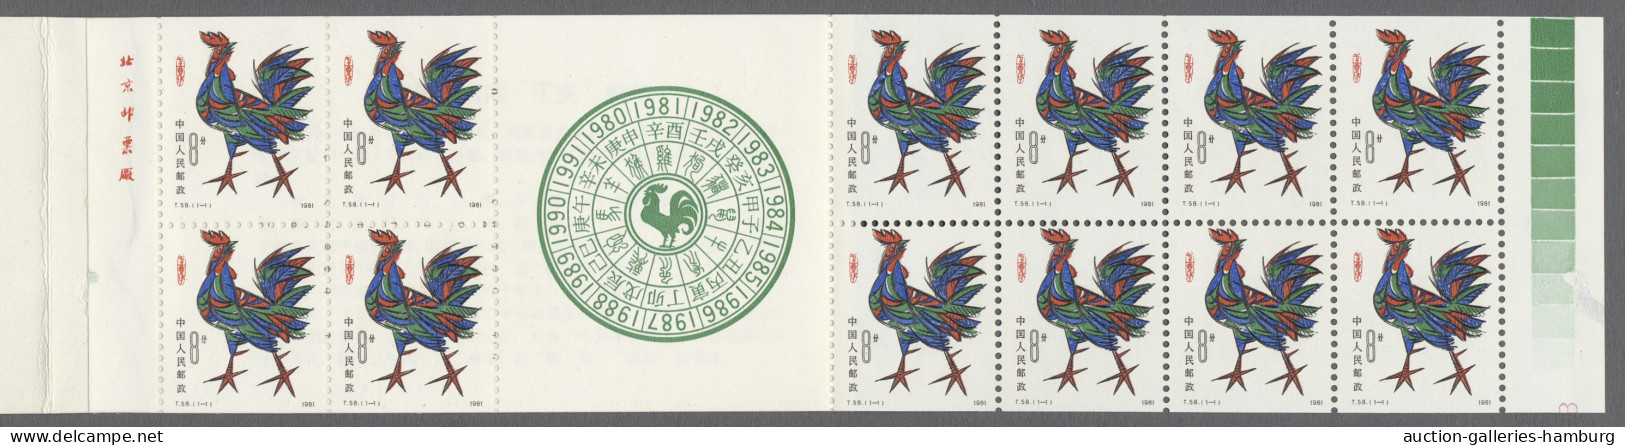 China (PRC): 1981, "Jahr Des Hahnes"-Markenheftchen In Postfrischer Erhaltung Mi - Neufs